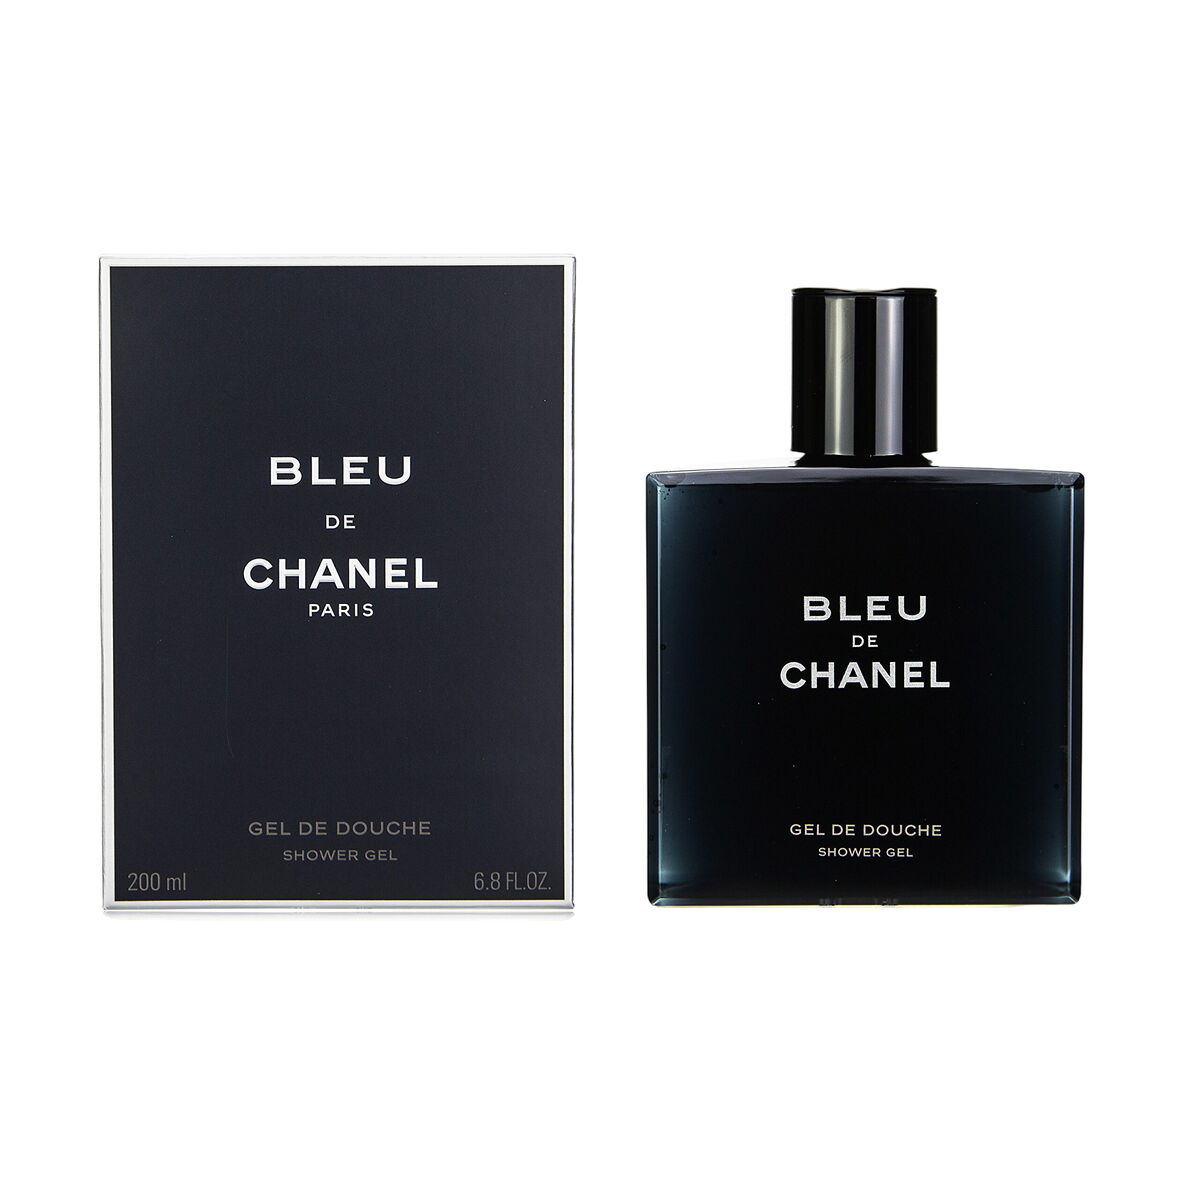 Gel de douche Chanel Bleu de Chanel 200 ml